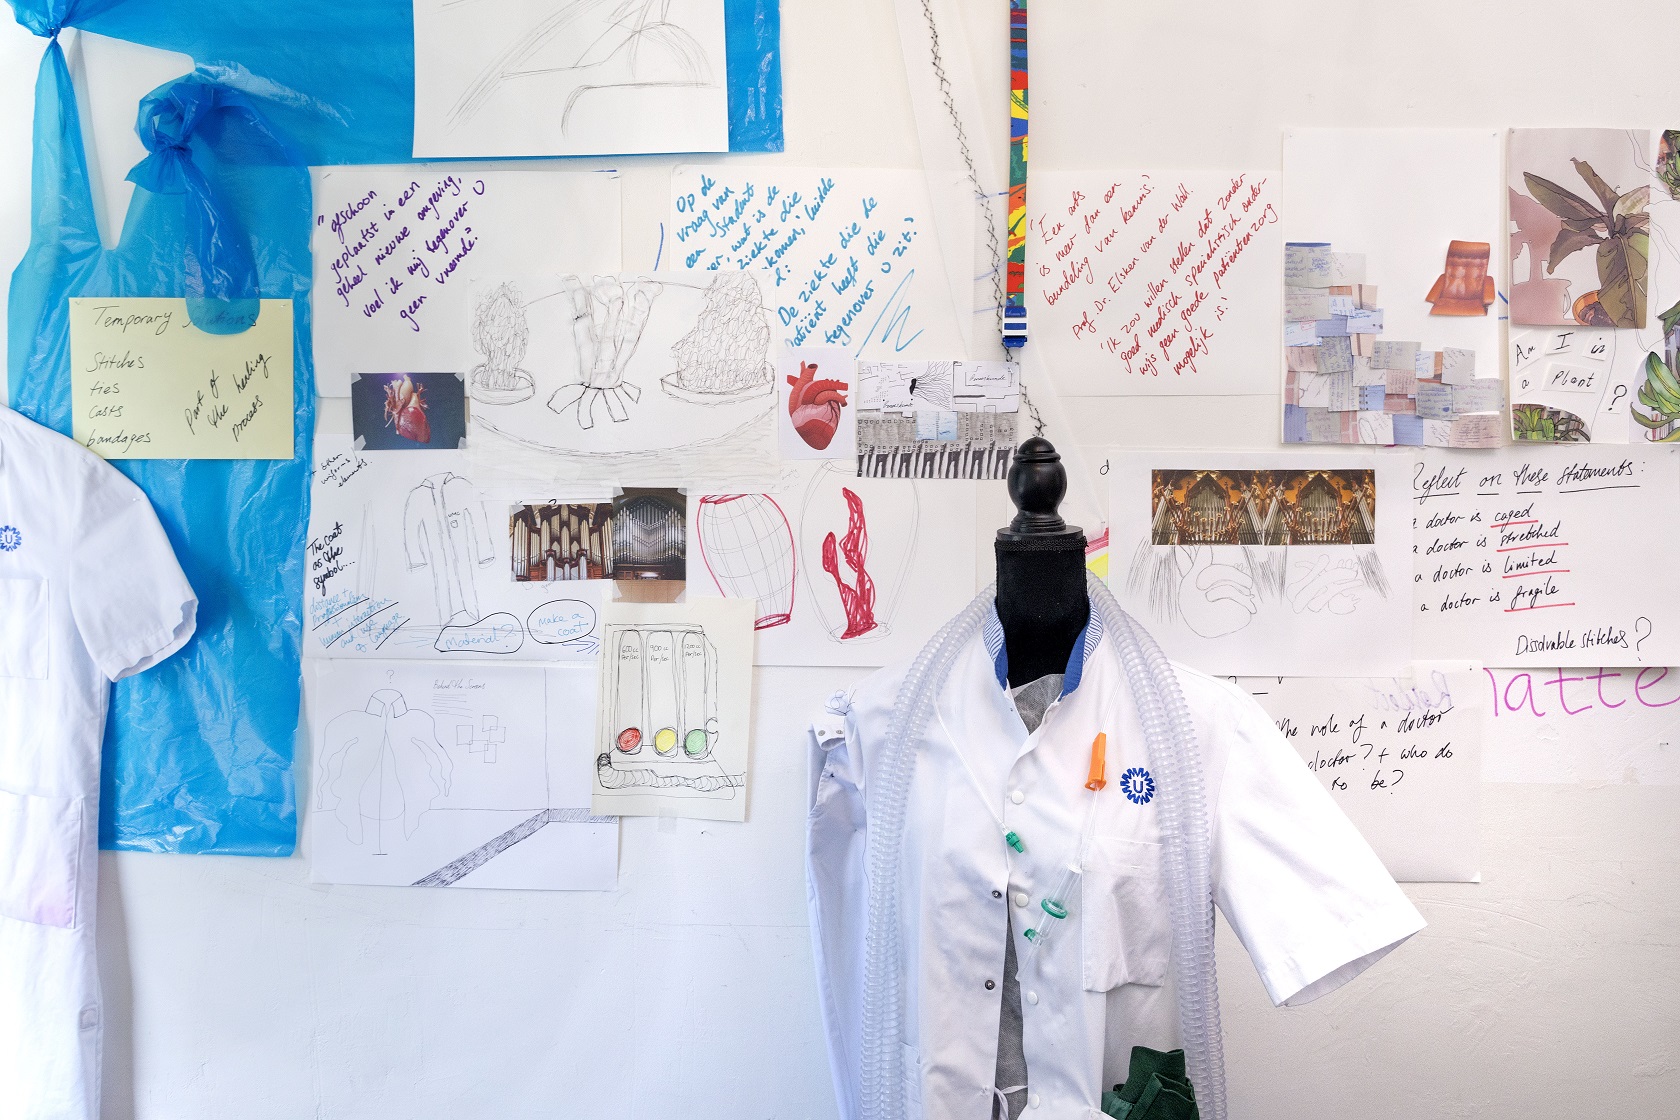 pop met doktersjas staat voor een collage met schetsen, teksten, kleuren en materialen op de wand in de studio van Sarah